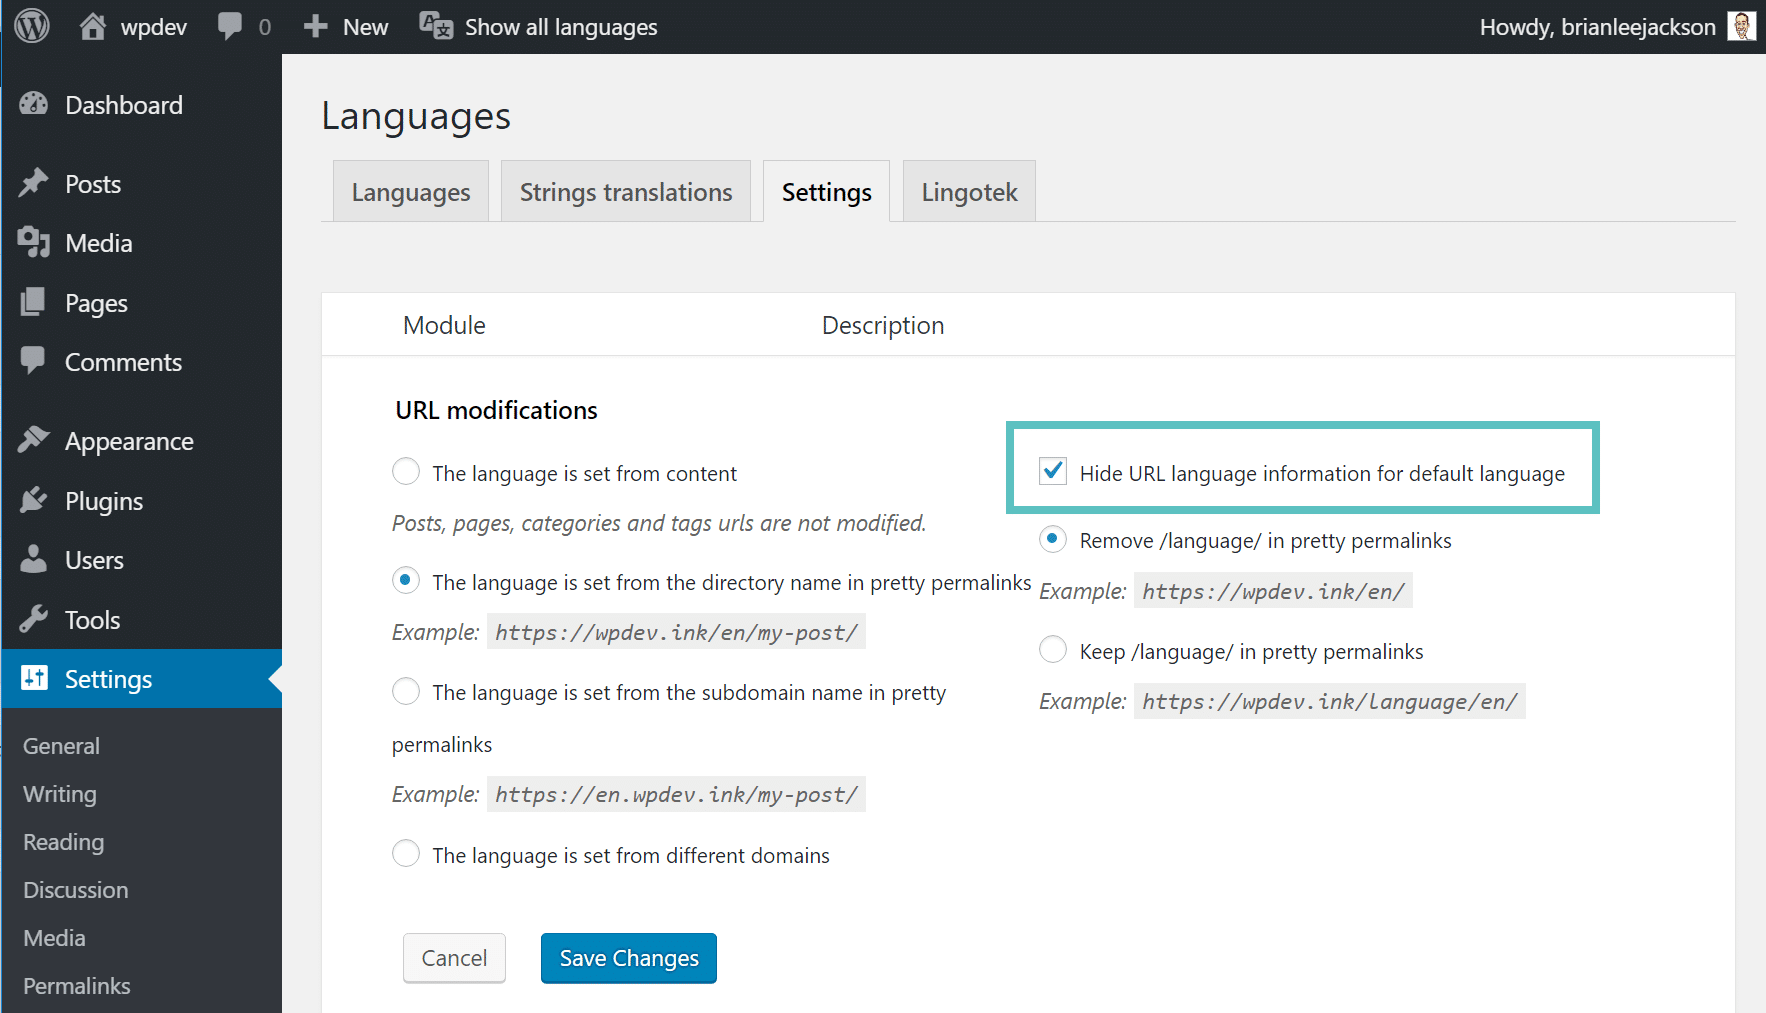 hide language url for default language